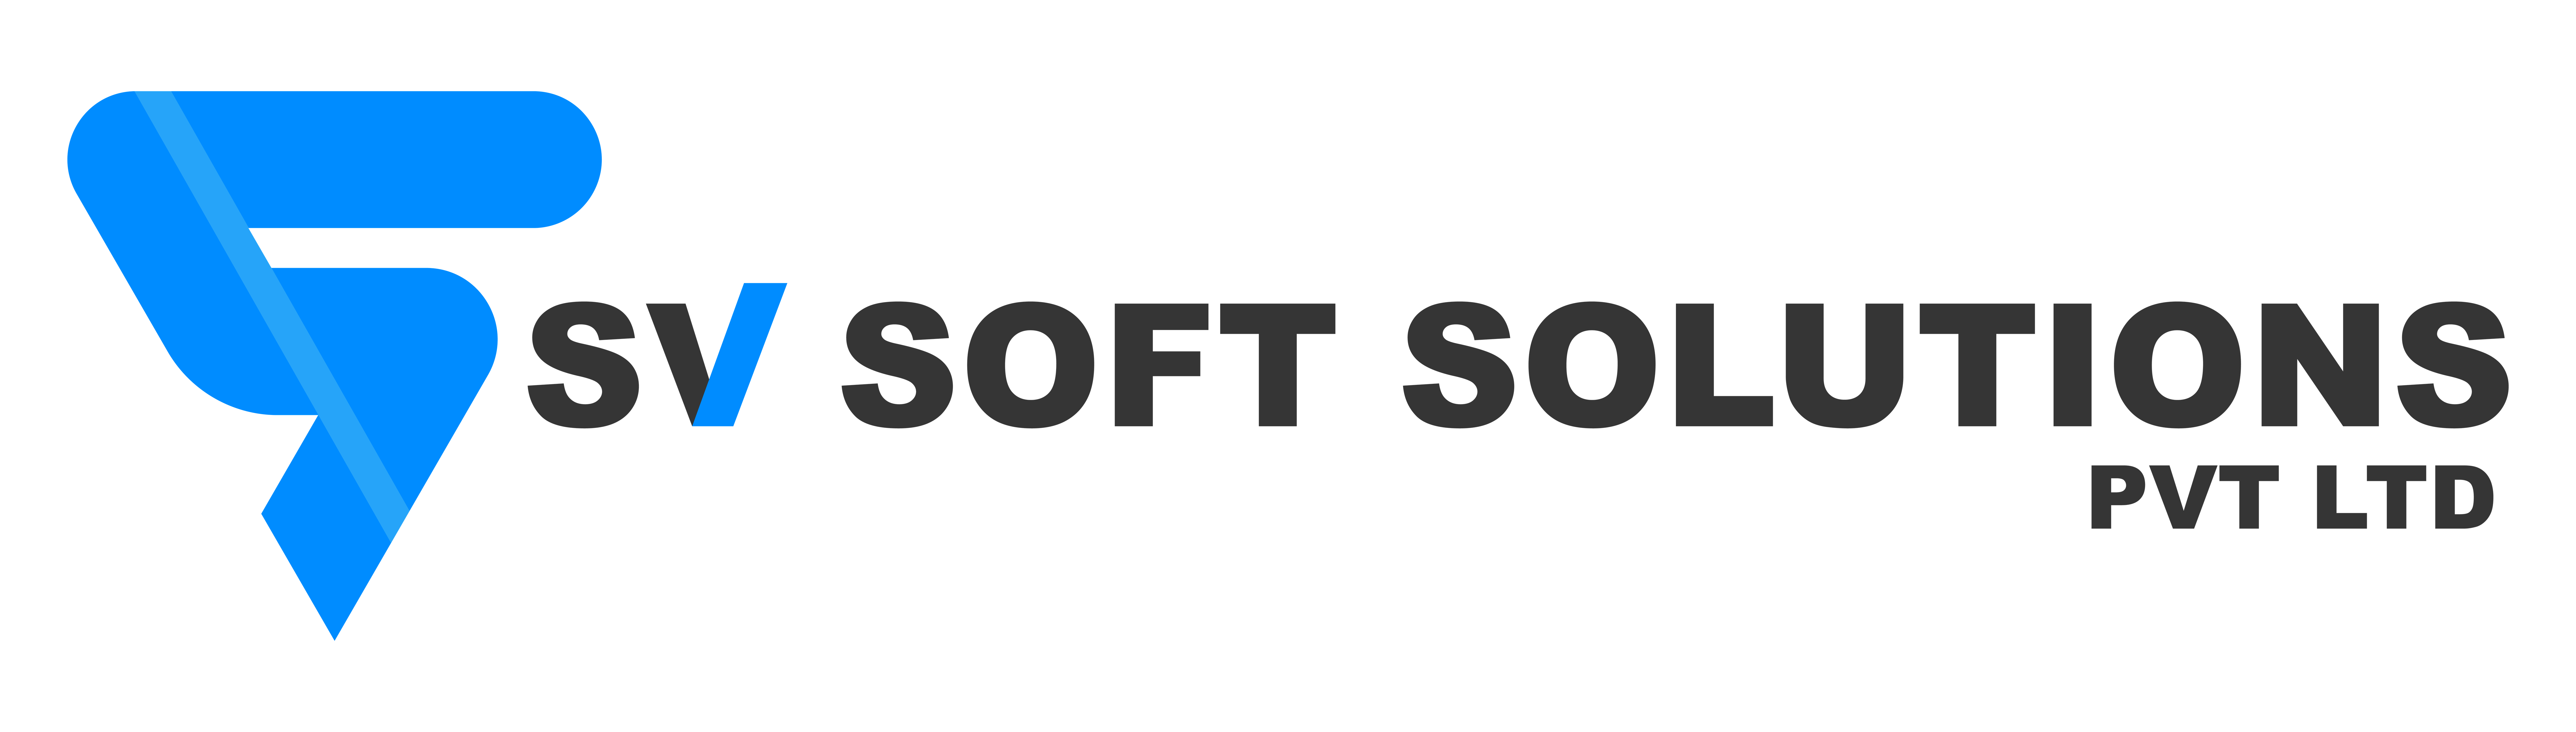 Sv Soft Solutions Pvt Ltd | Web development company in Vijayawada